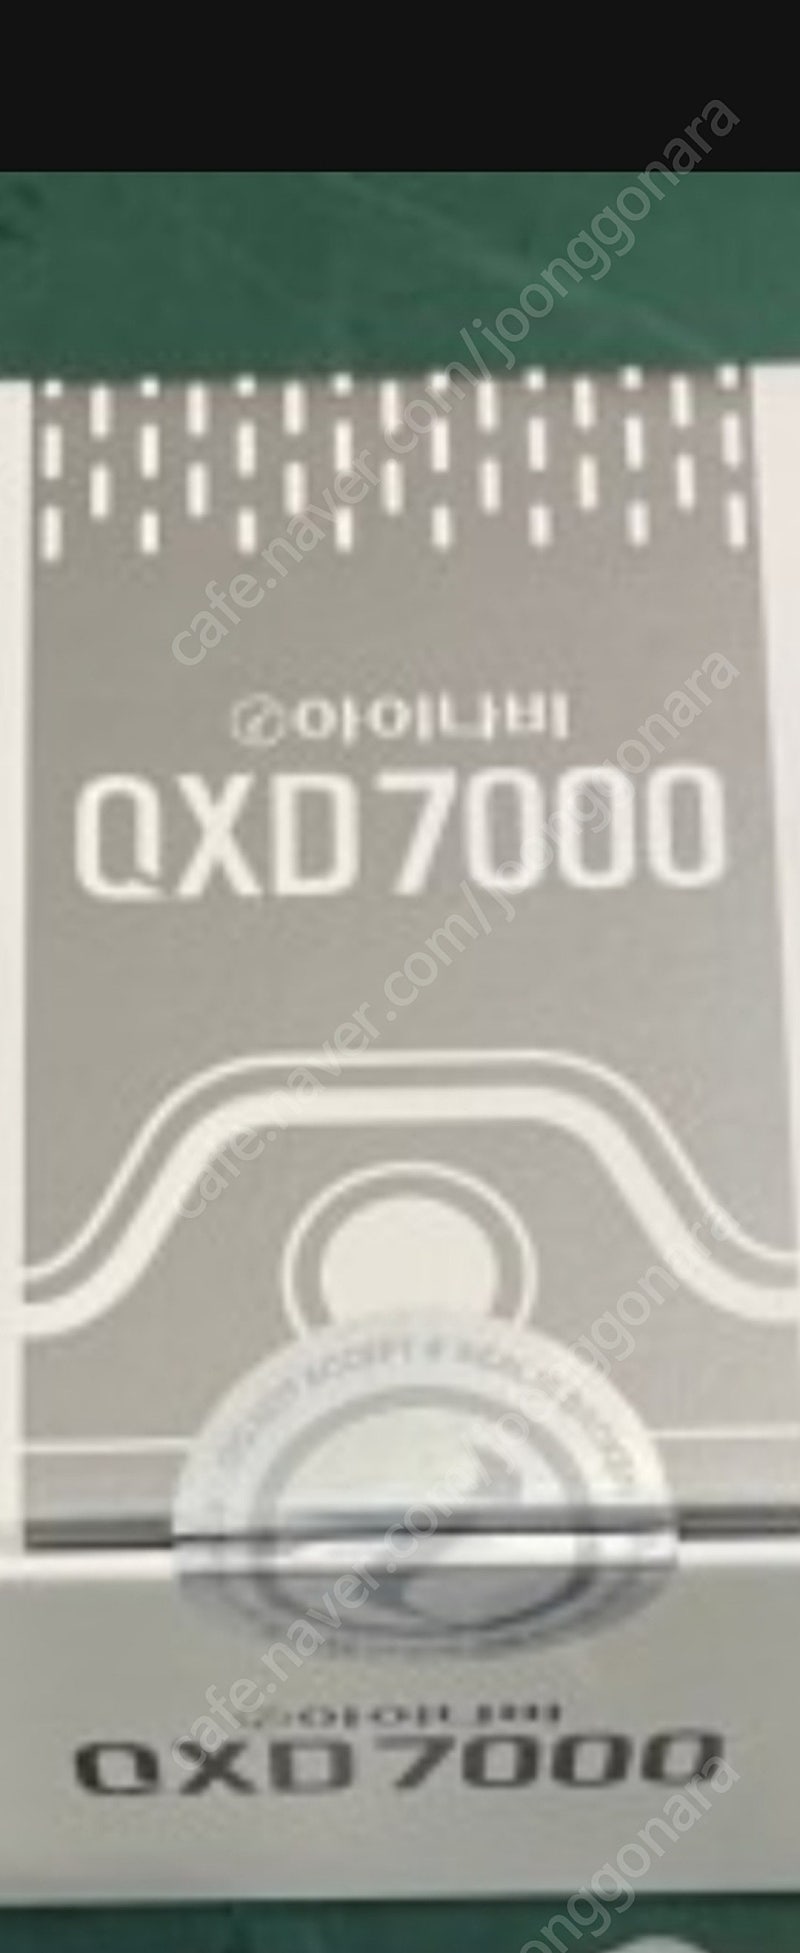 Qxd7000아이나비블랙박스 미개봉 판매합니다 대구